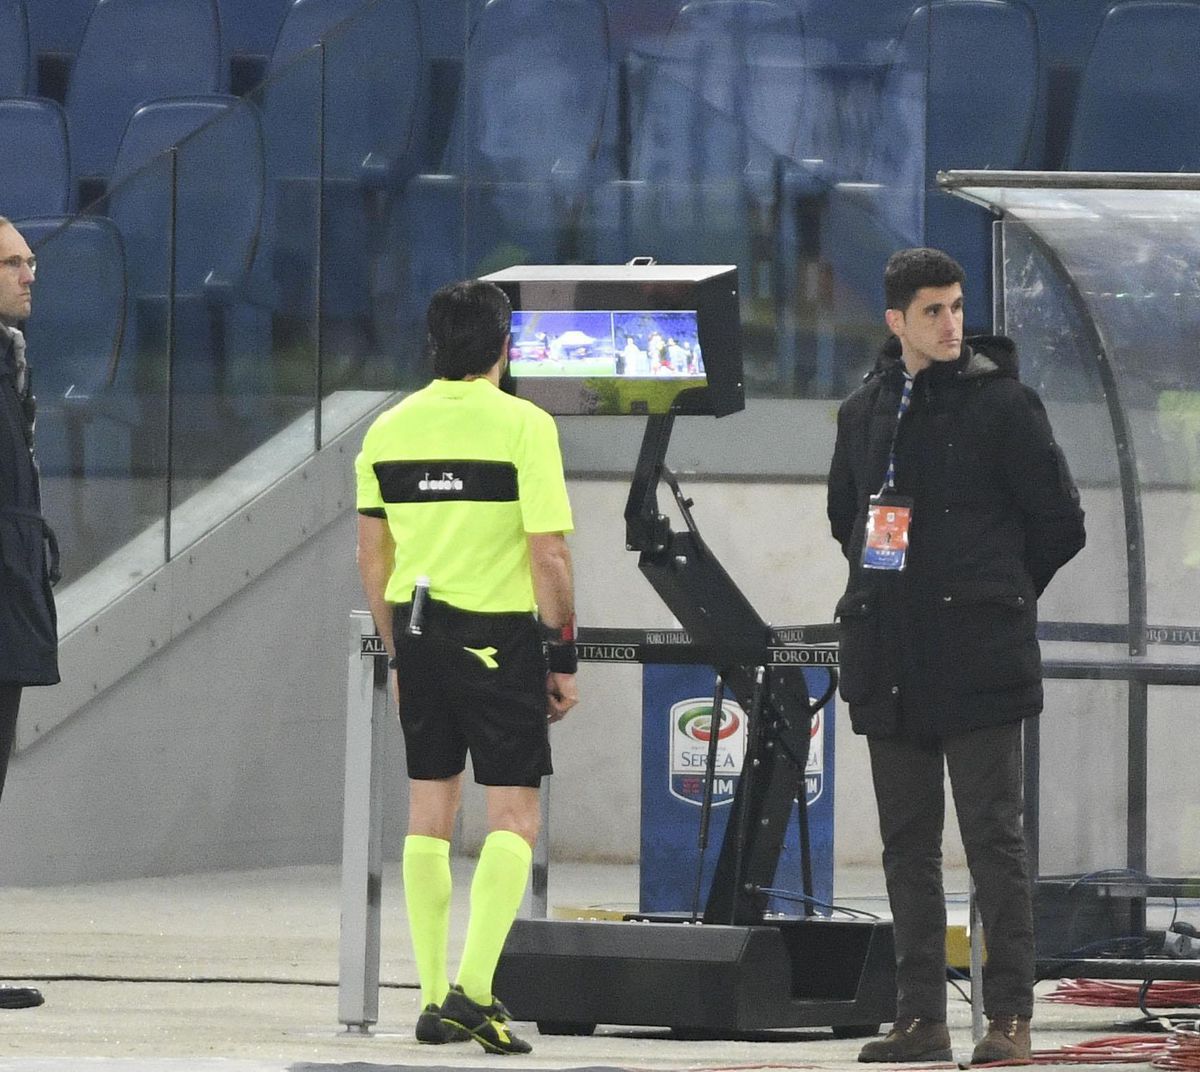 Revolutie in Serie A: beslissing videoscheidsrechter op grote schermen in stadions